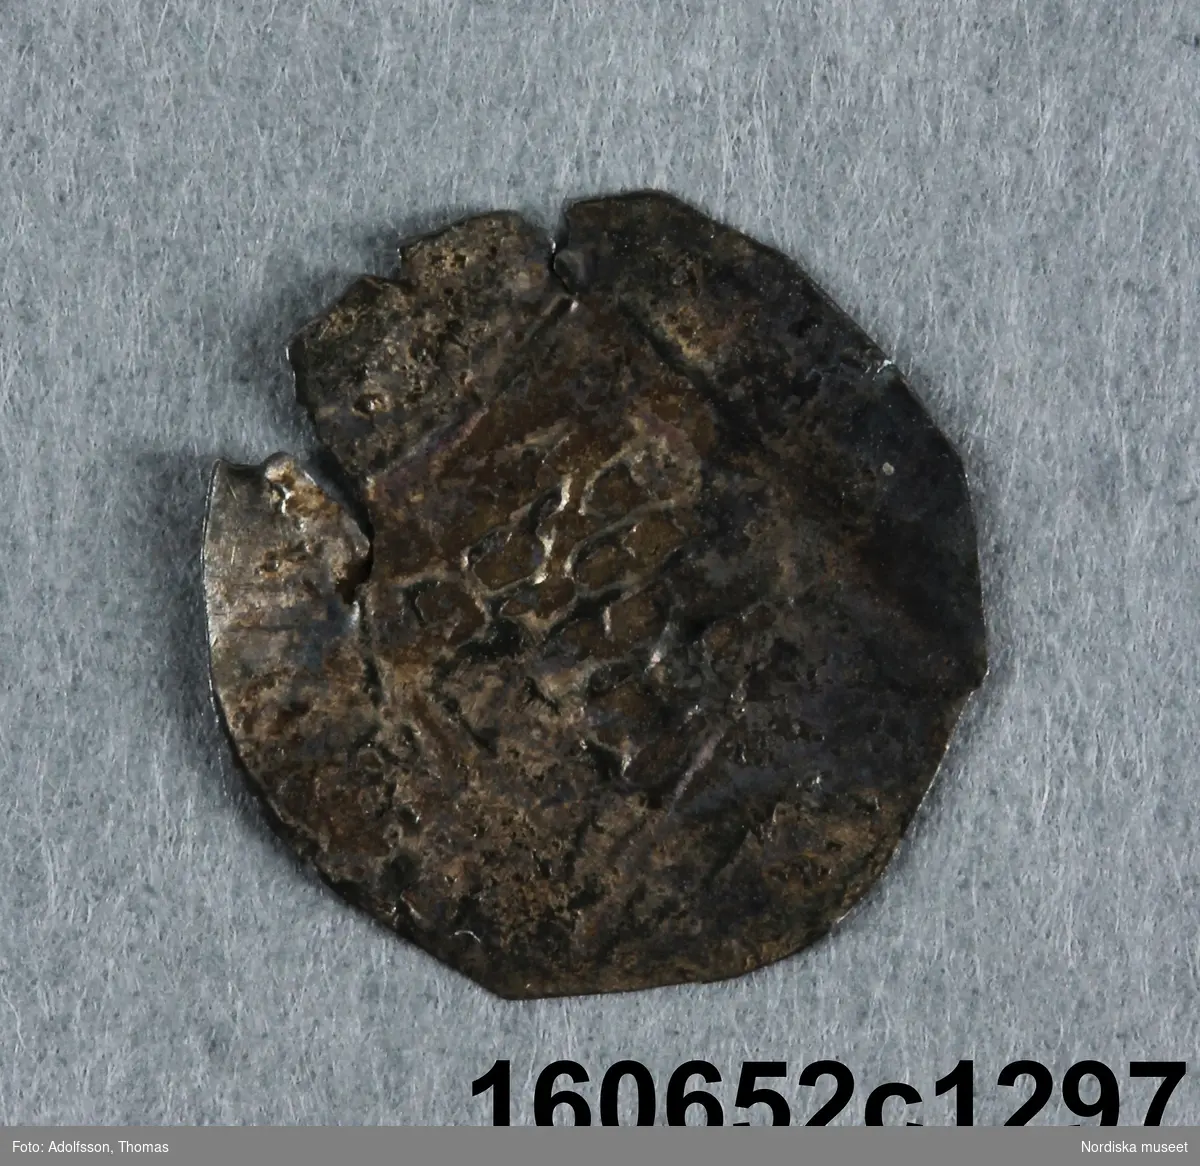 1 penning, silver, utgiven ca 1140-1270 av okänd myntherre på Gotland, ev. Visby.